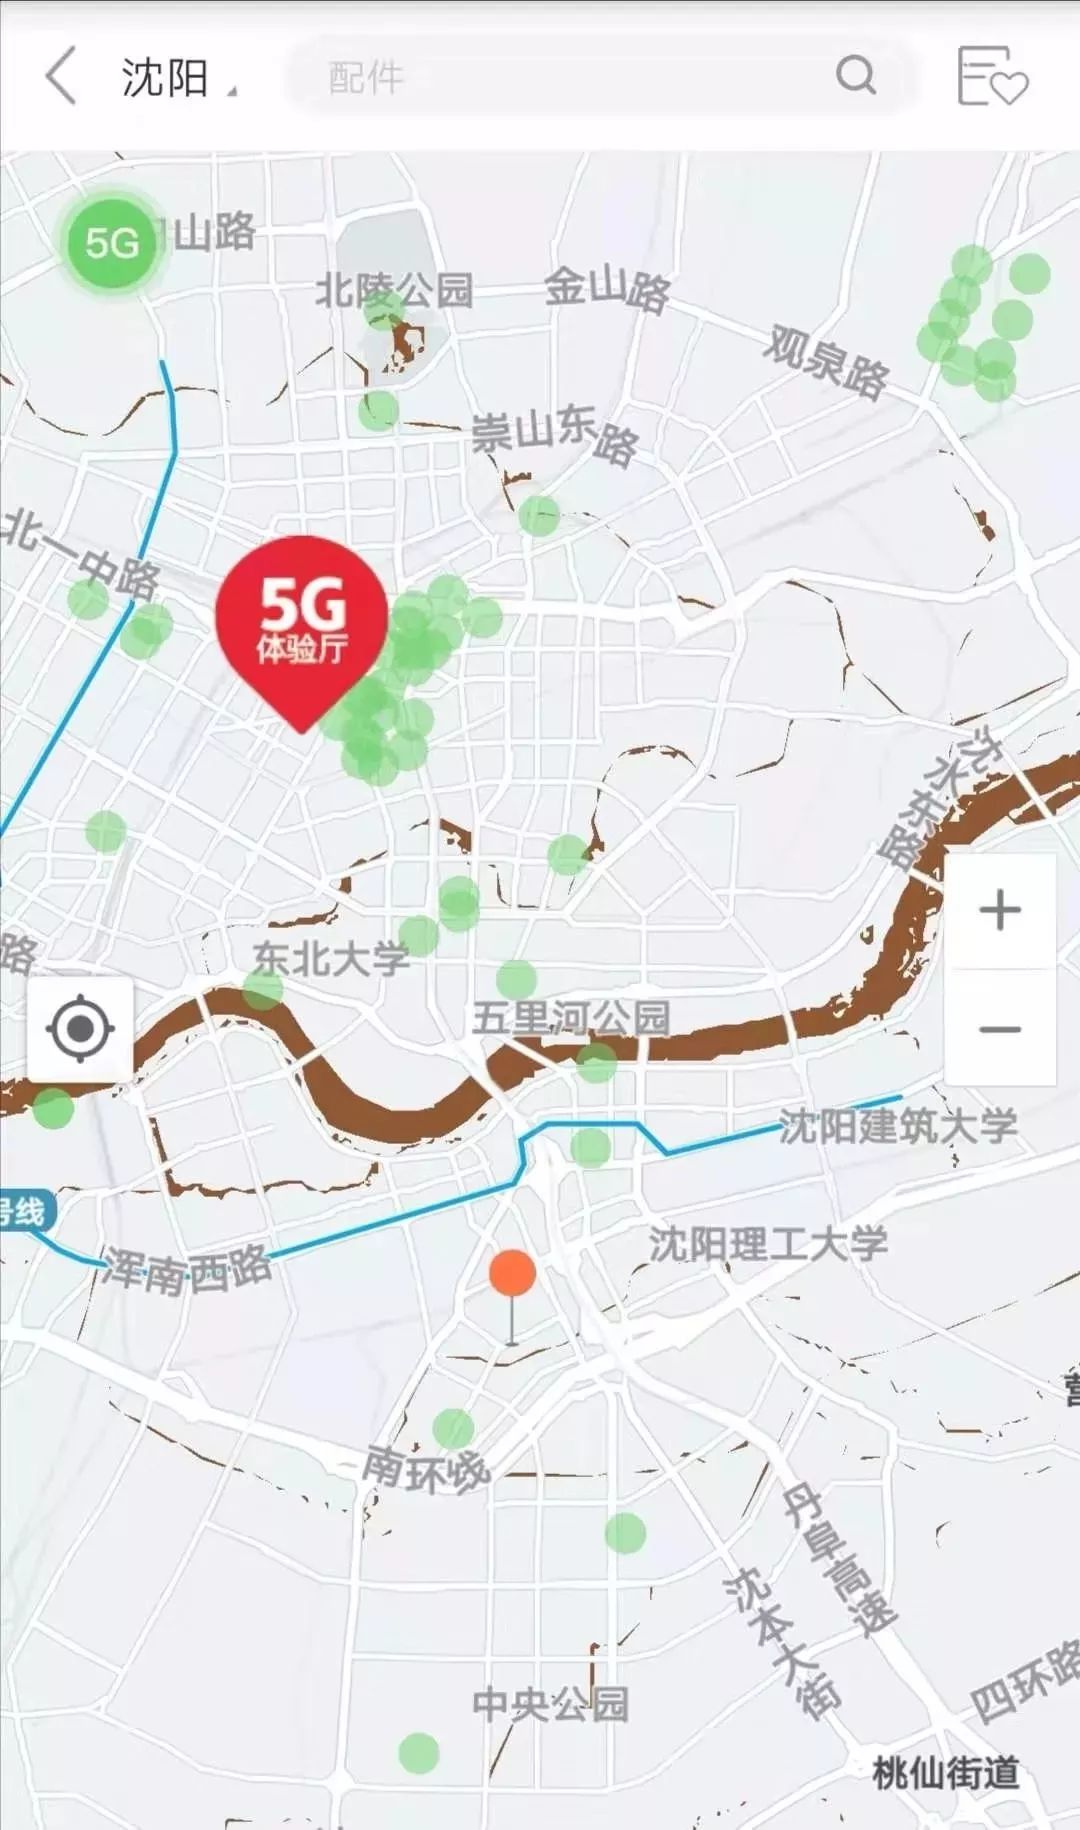 石家庄太原济南青岛方法二通过百度地图搜索联通5g覆盖